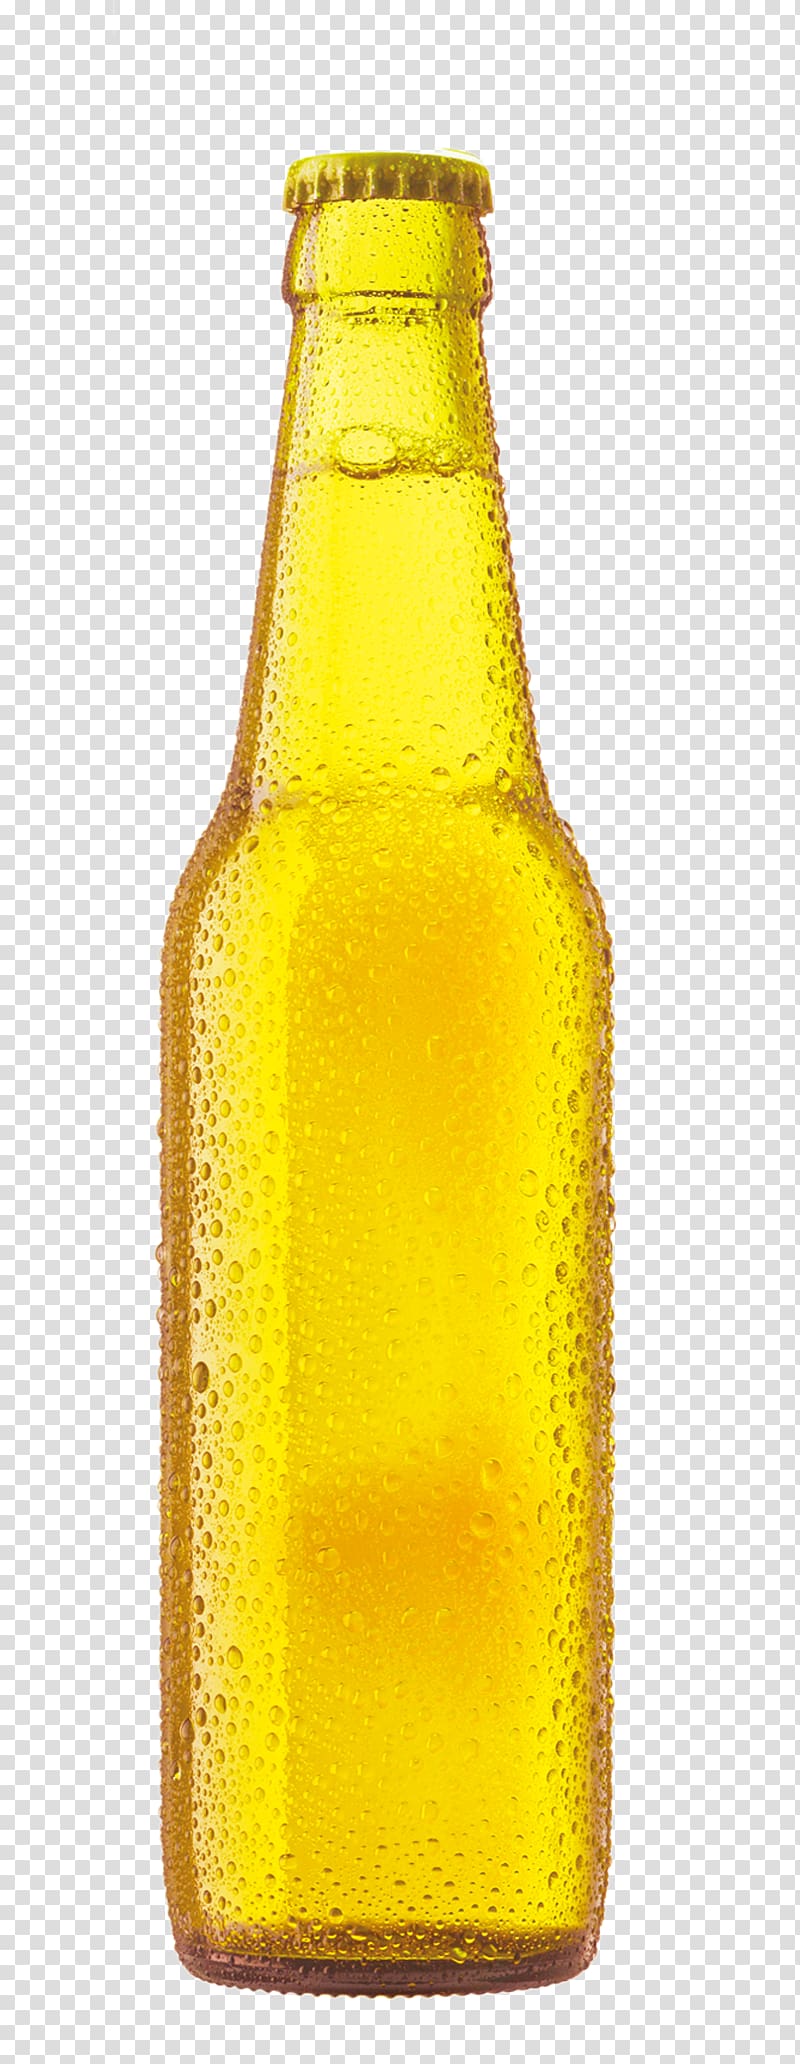 bottled beer , Beer bottle Cup, beer transparent background PNG clipart